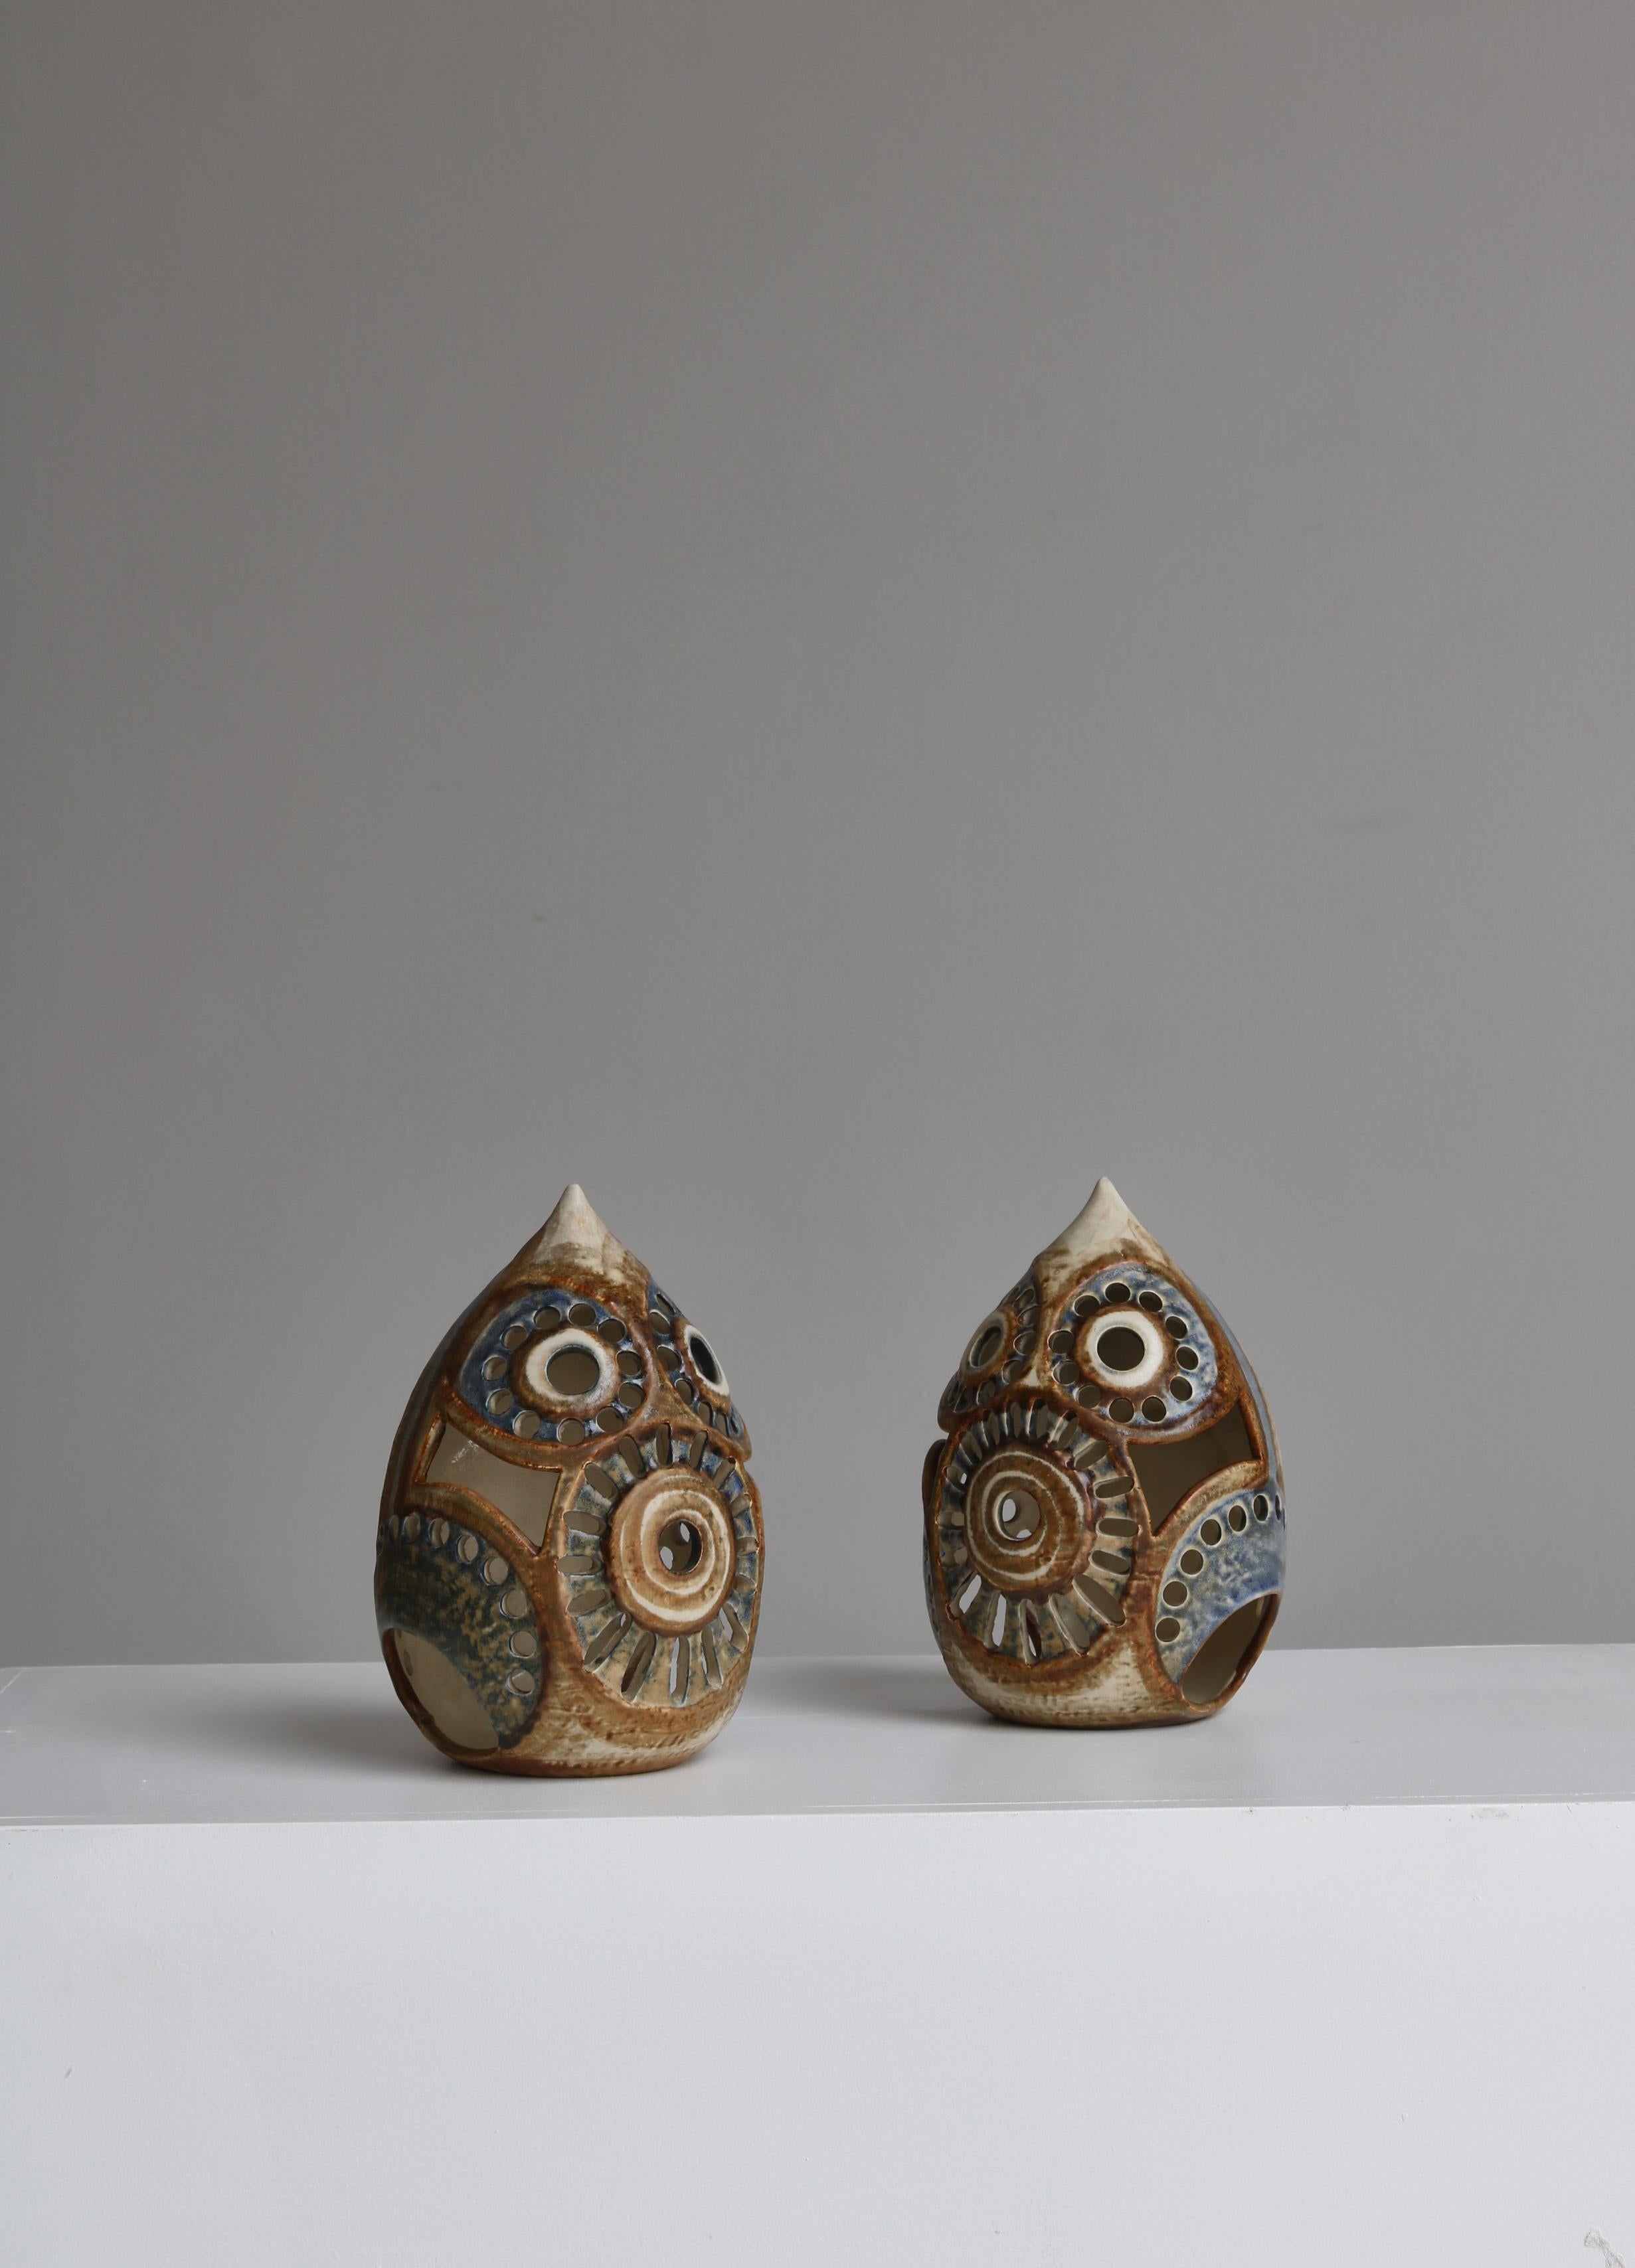 Wunderschönes Paar handgefertigter Kerzenlampen von Joseph Simon, hergestellt in der Töpferei Søholm in Dänemark in den 1960er Jahren. Die Lampen sind aus handdekoriertem glasiertem Steingut hergestellt. Sie können stehend oder an der Wand hängend